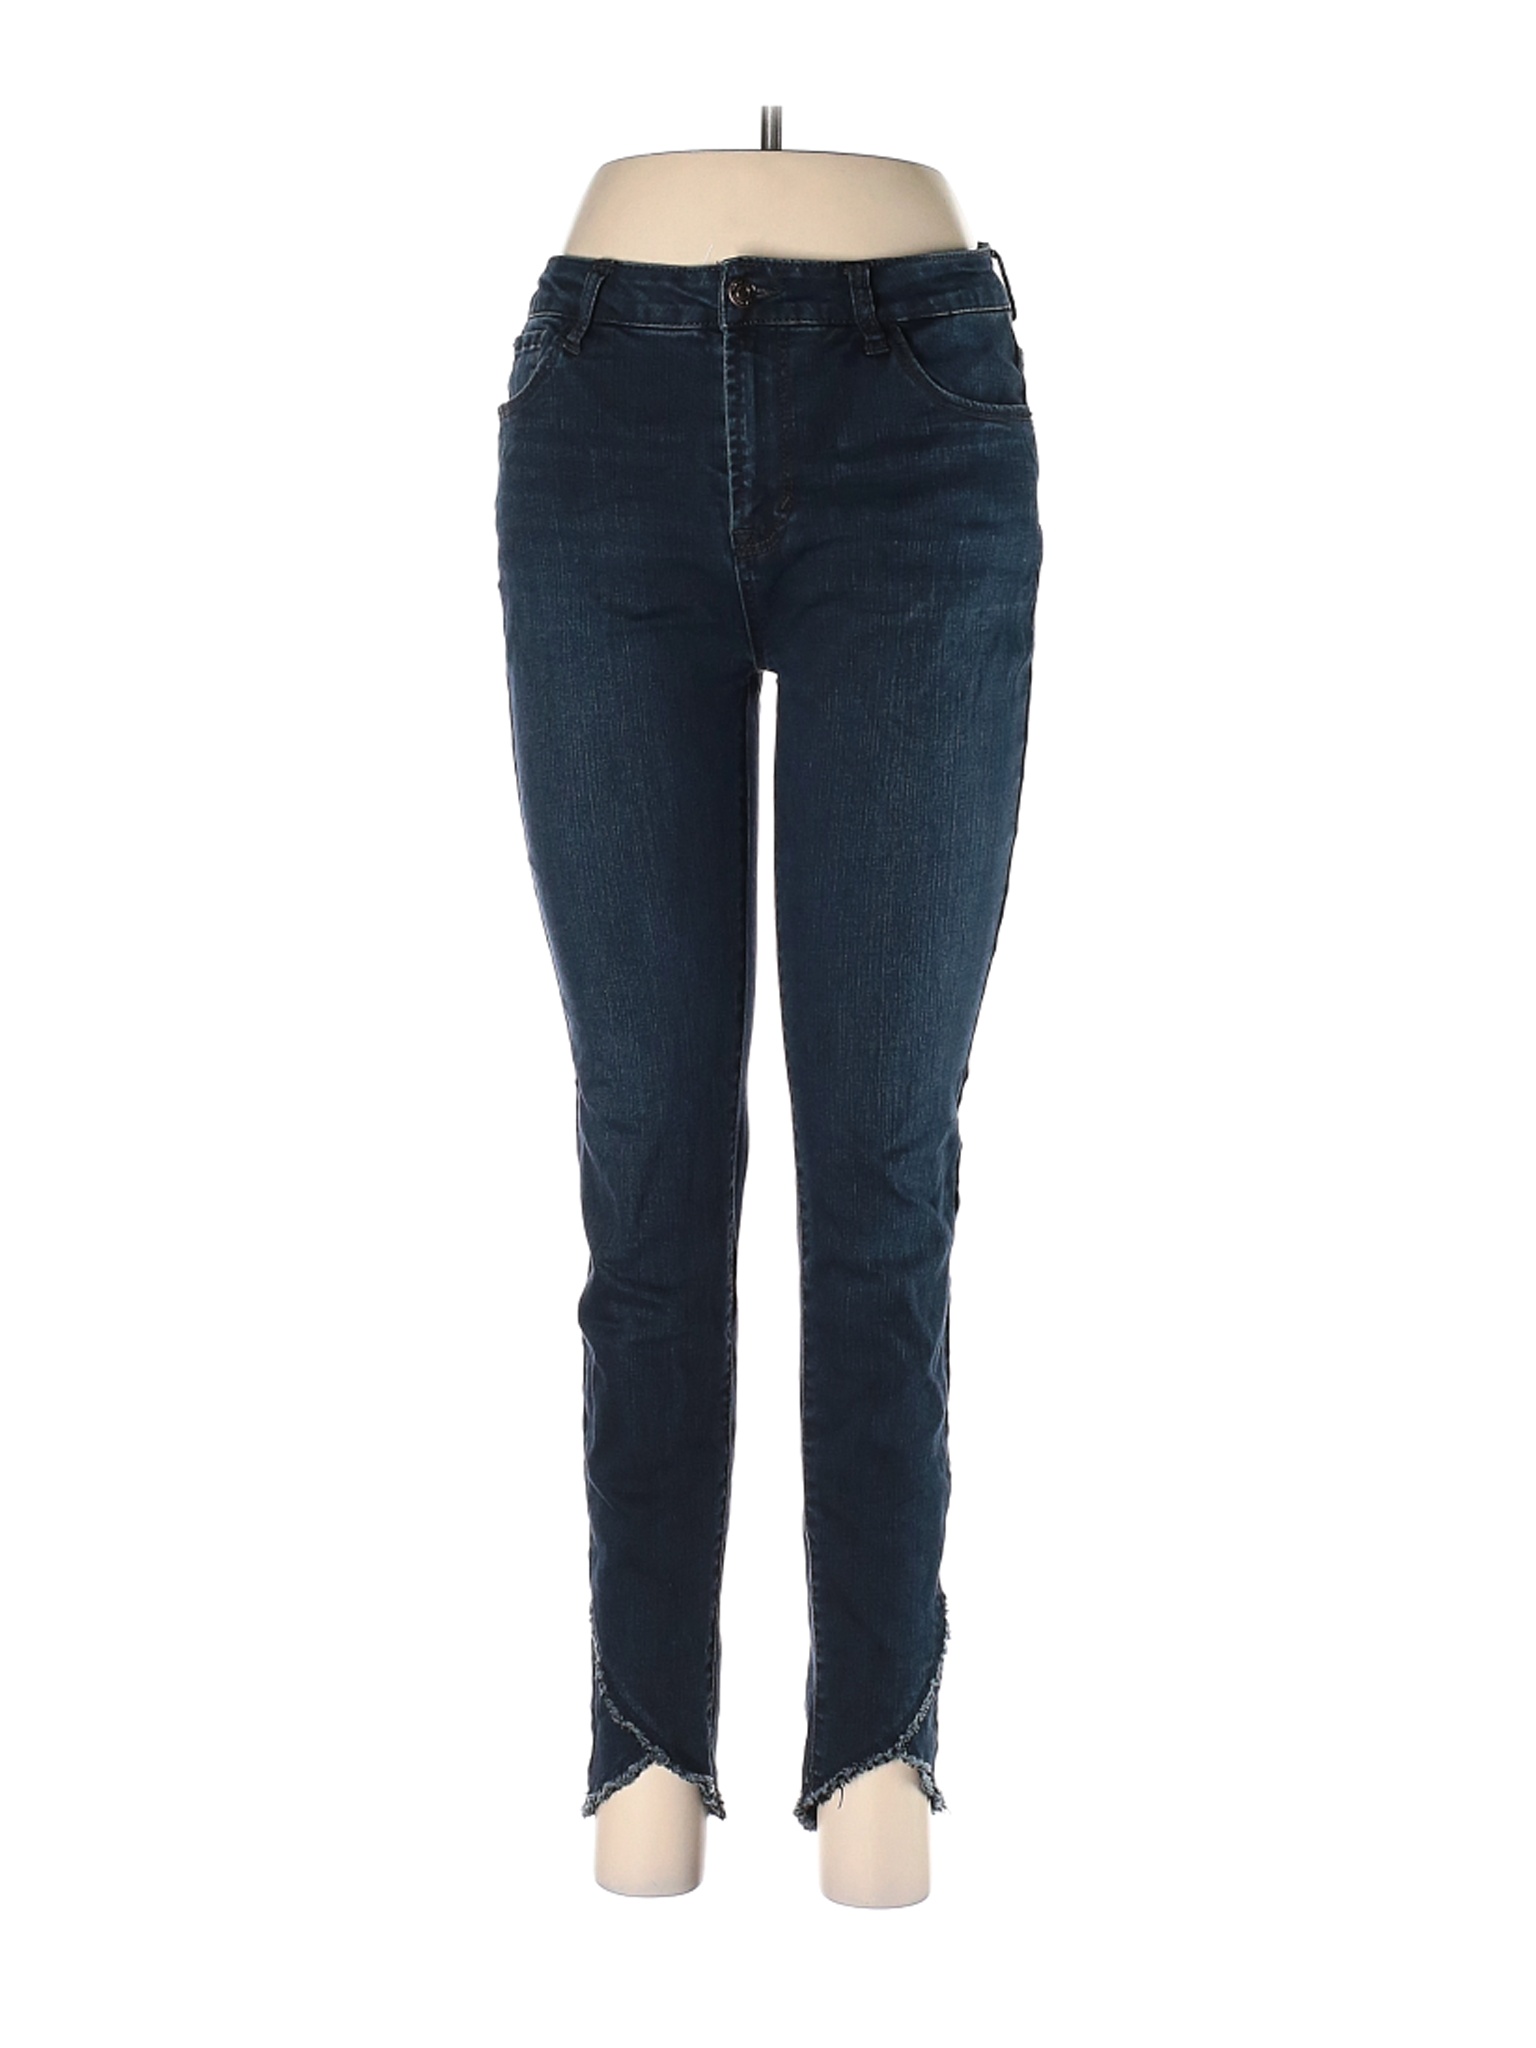 Kensie Women Blue Jeans 28W | eBay